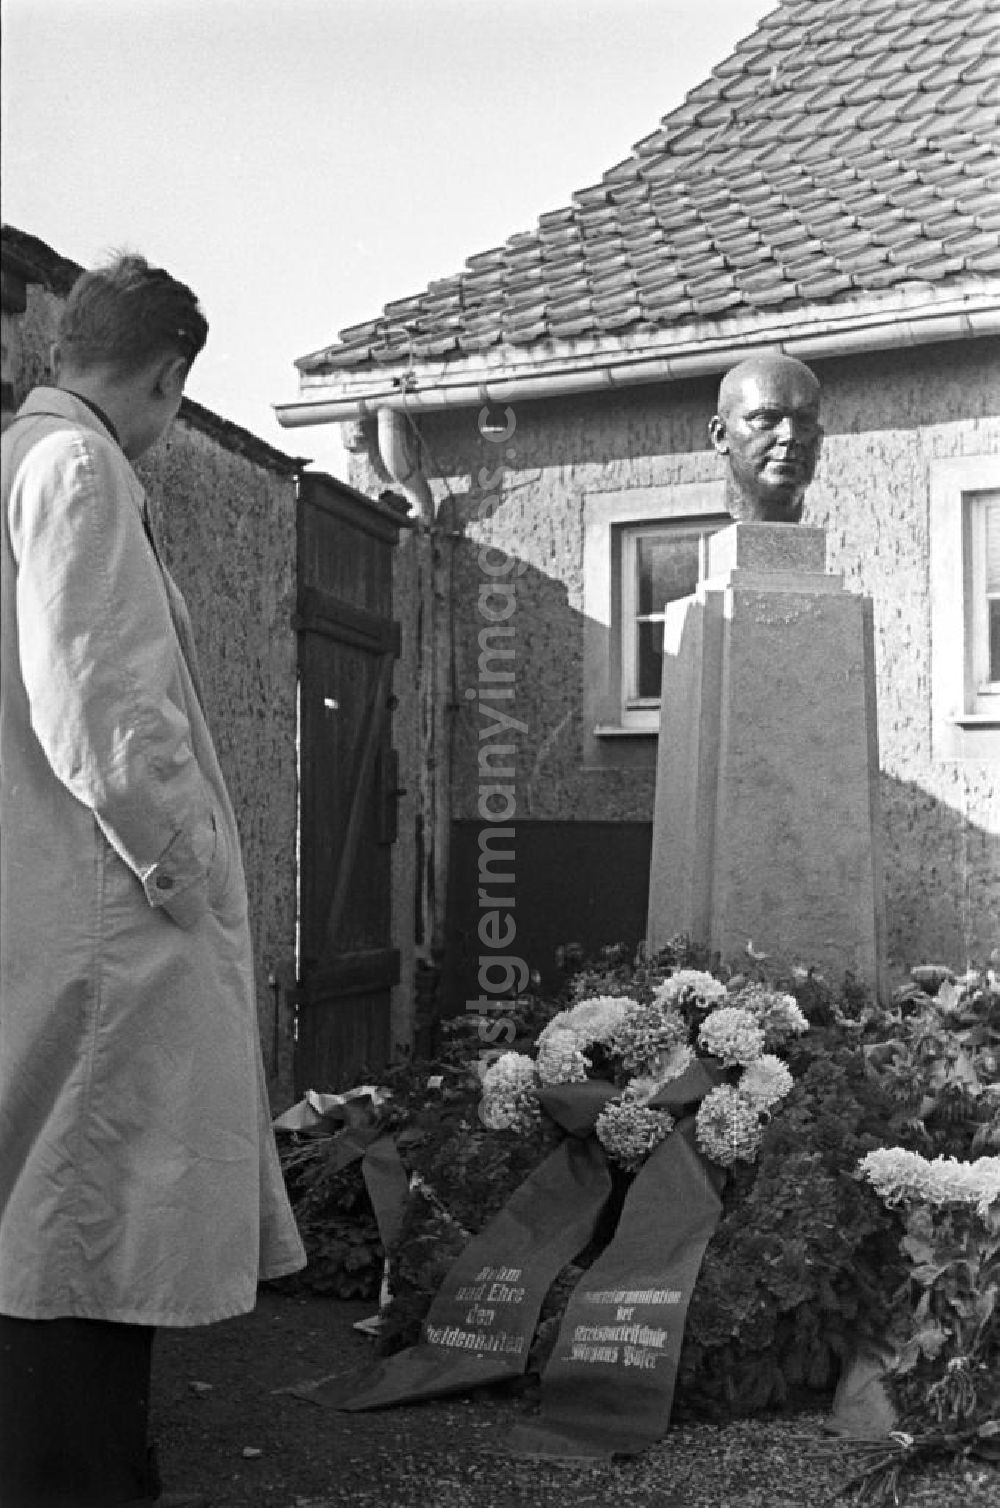 Buchenwald: Ein Besucher steht an der Gedenkstätte für den deutschen Kommunisten und Arbeiterführer Ernst Thälmann im ehemaligen Konzentrationslager Buchenwald. Einer der niedergelegten Kränze stammte von der Parteiorganisation der Kreisparteischule Magnus Poser. In den 5